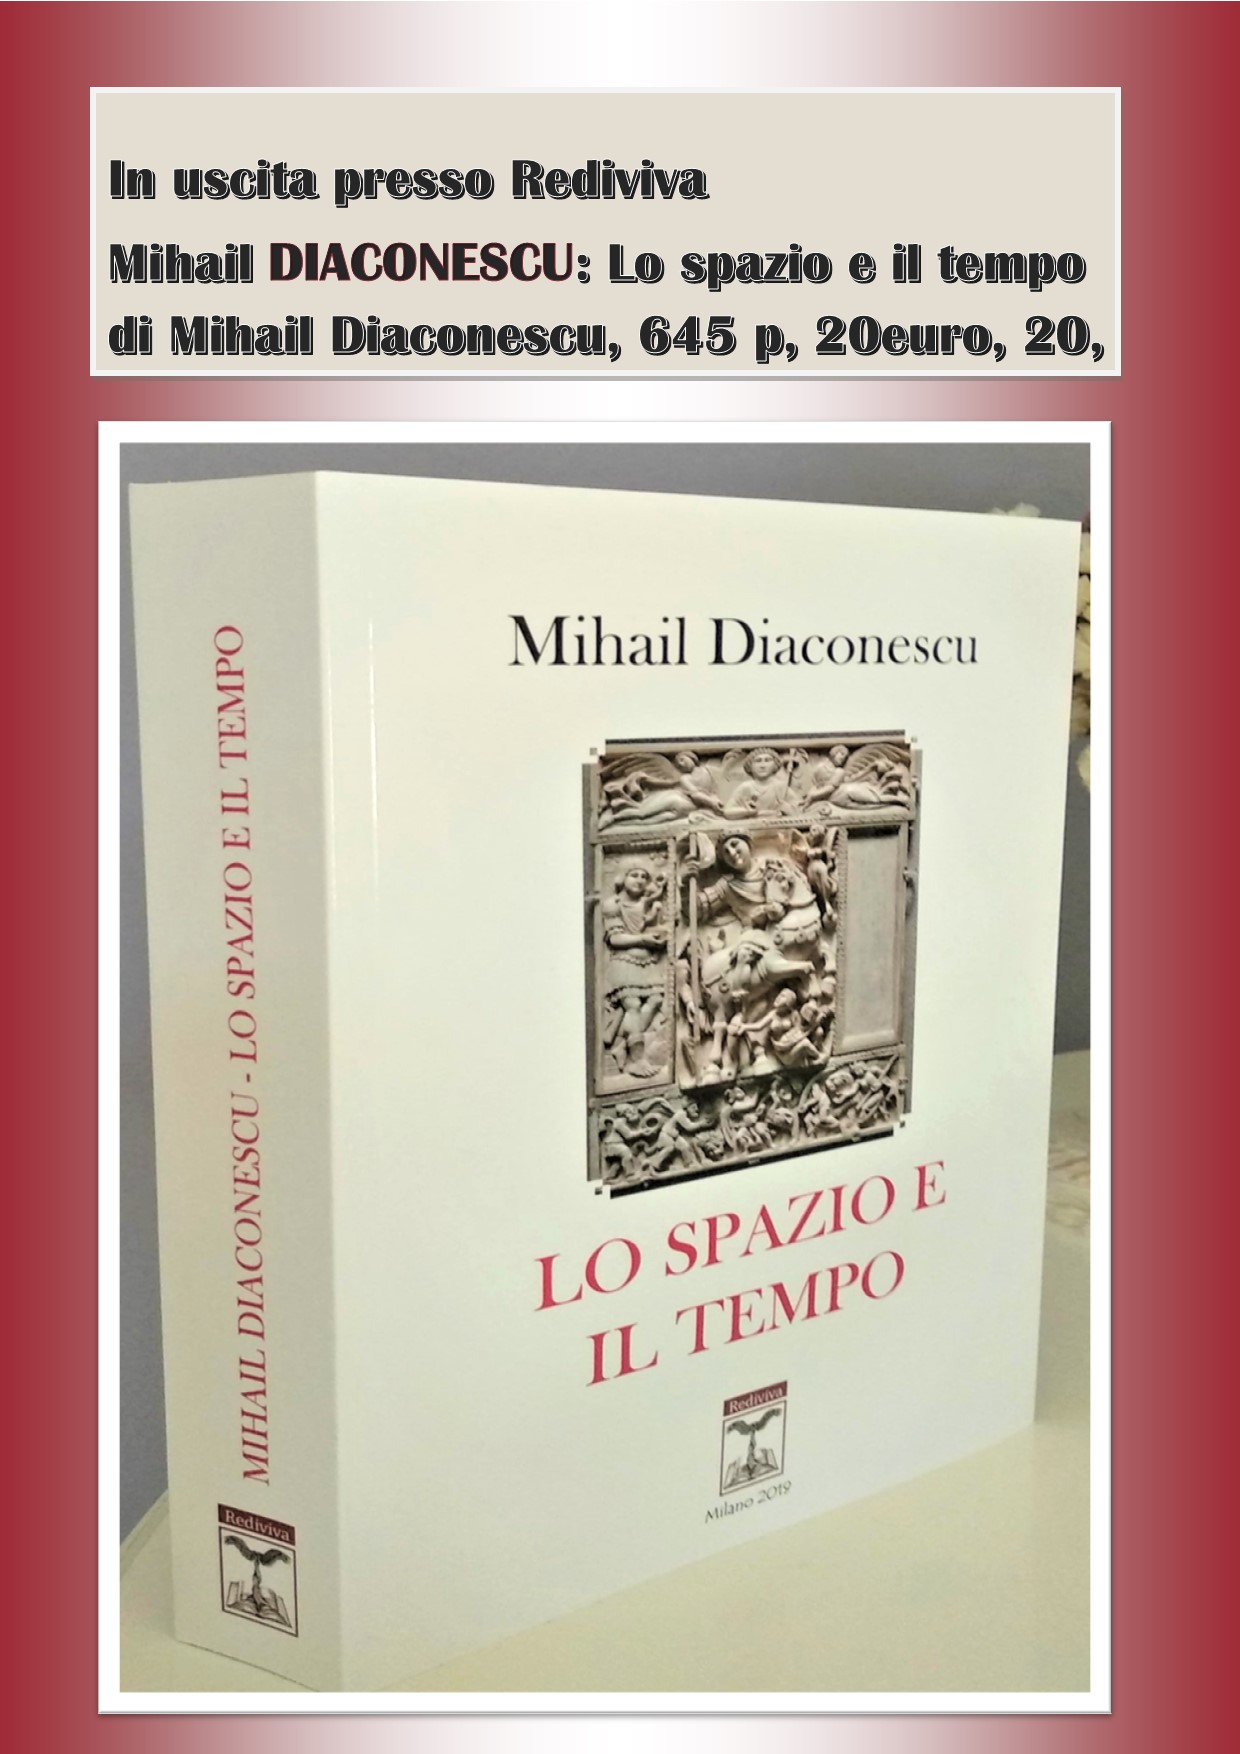 In uscita il libro: “Lo spazio e il tempo” di Mihail Diaconescu, ed Rediviva